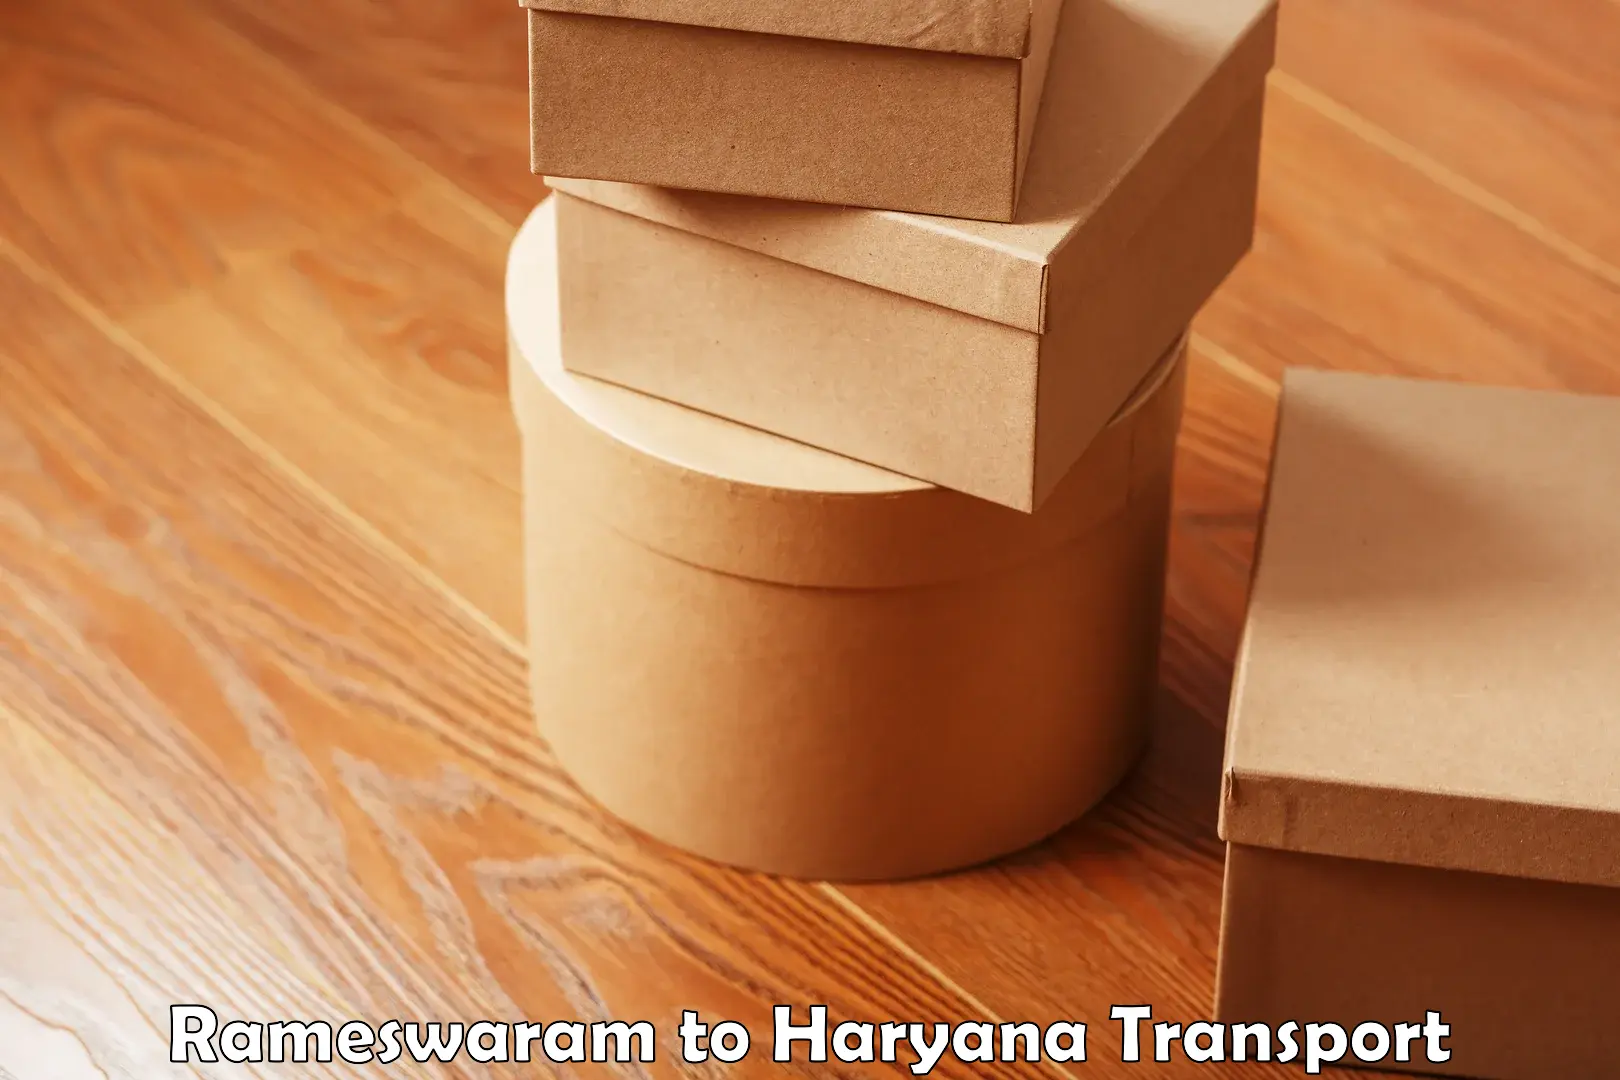 Online transport service Rameswaram to Hansi